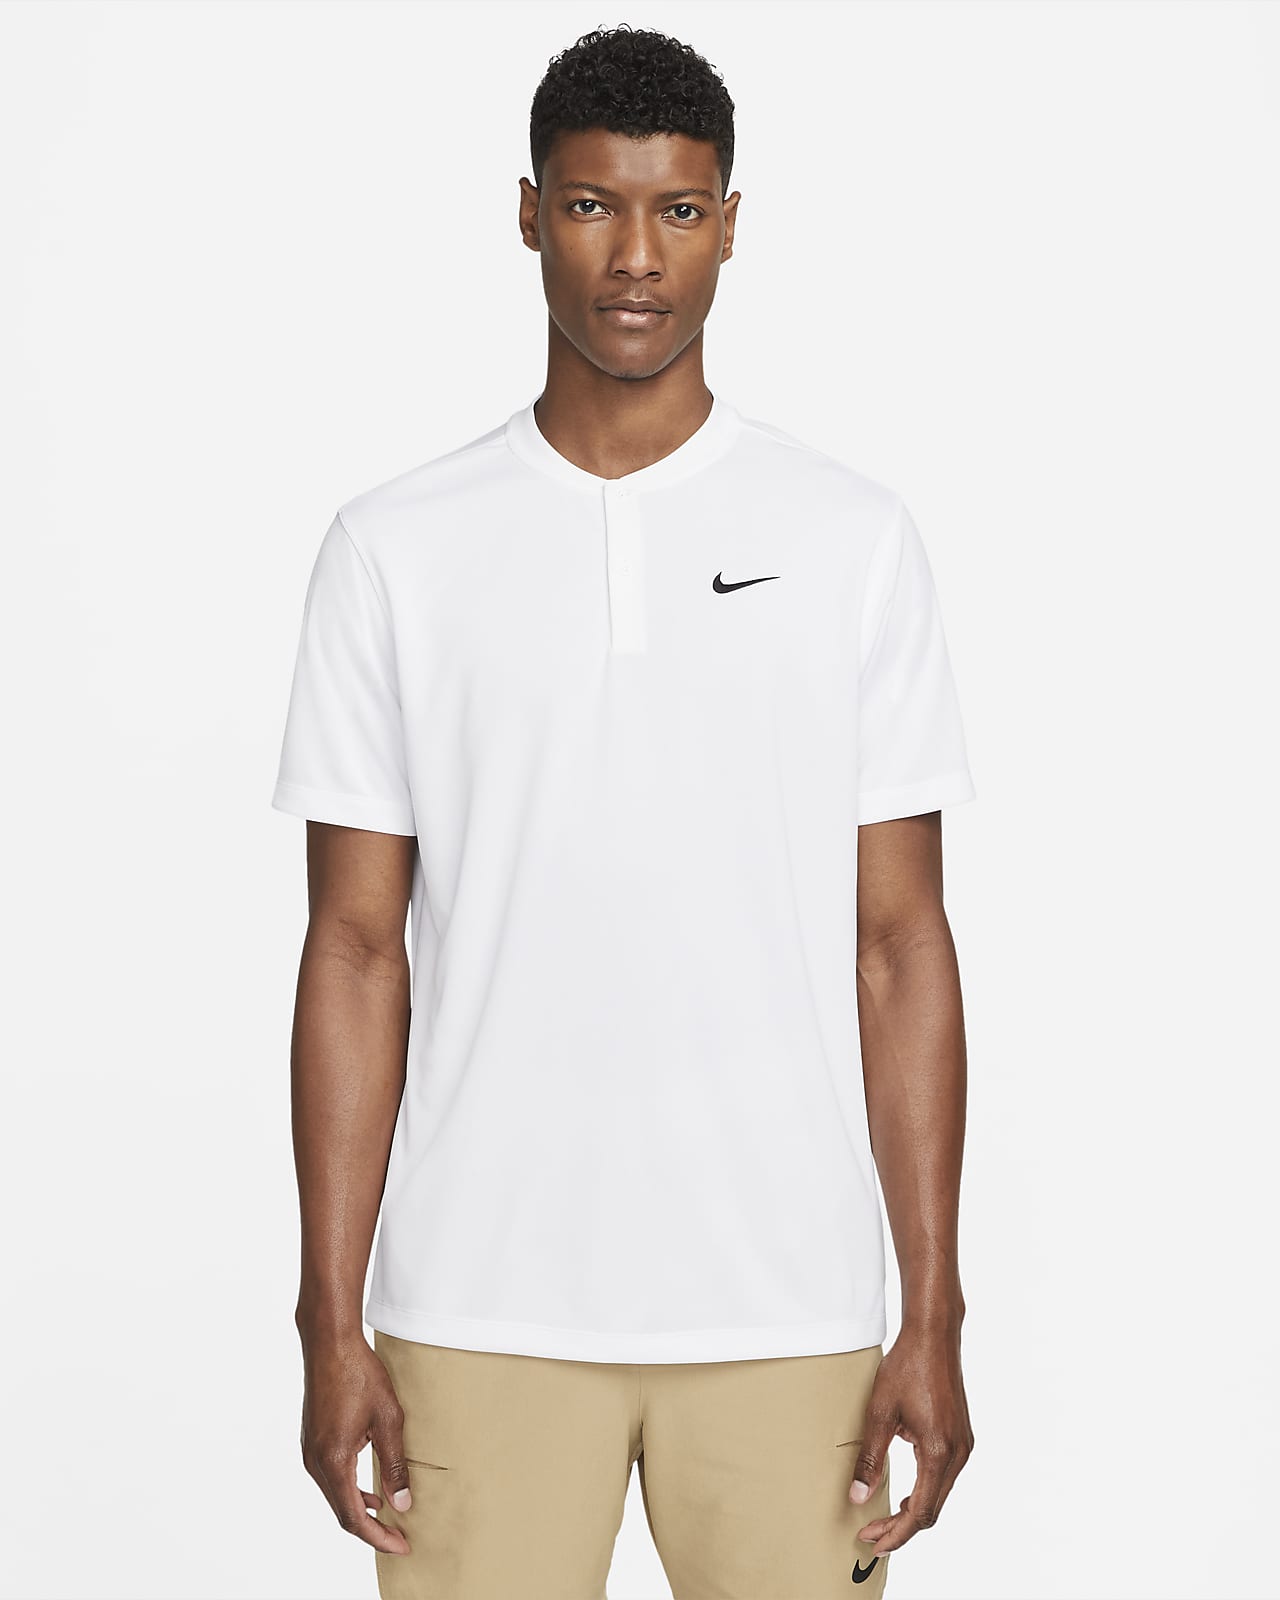 Ανδρική μπλούζα πόλο για τένις με μικρό γιακά NikeCourt Dri-FIT